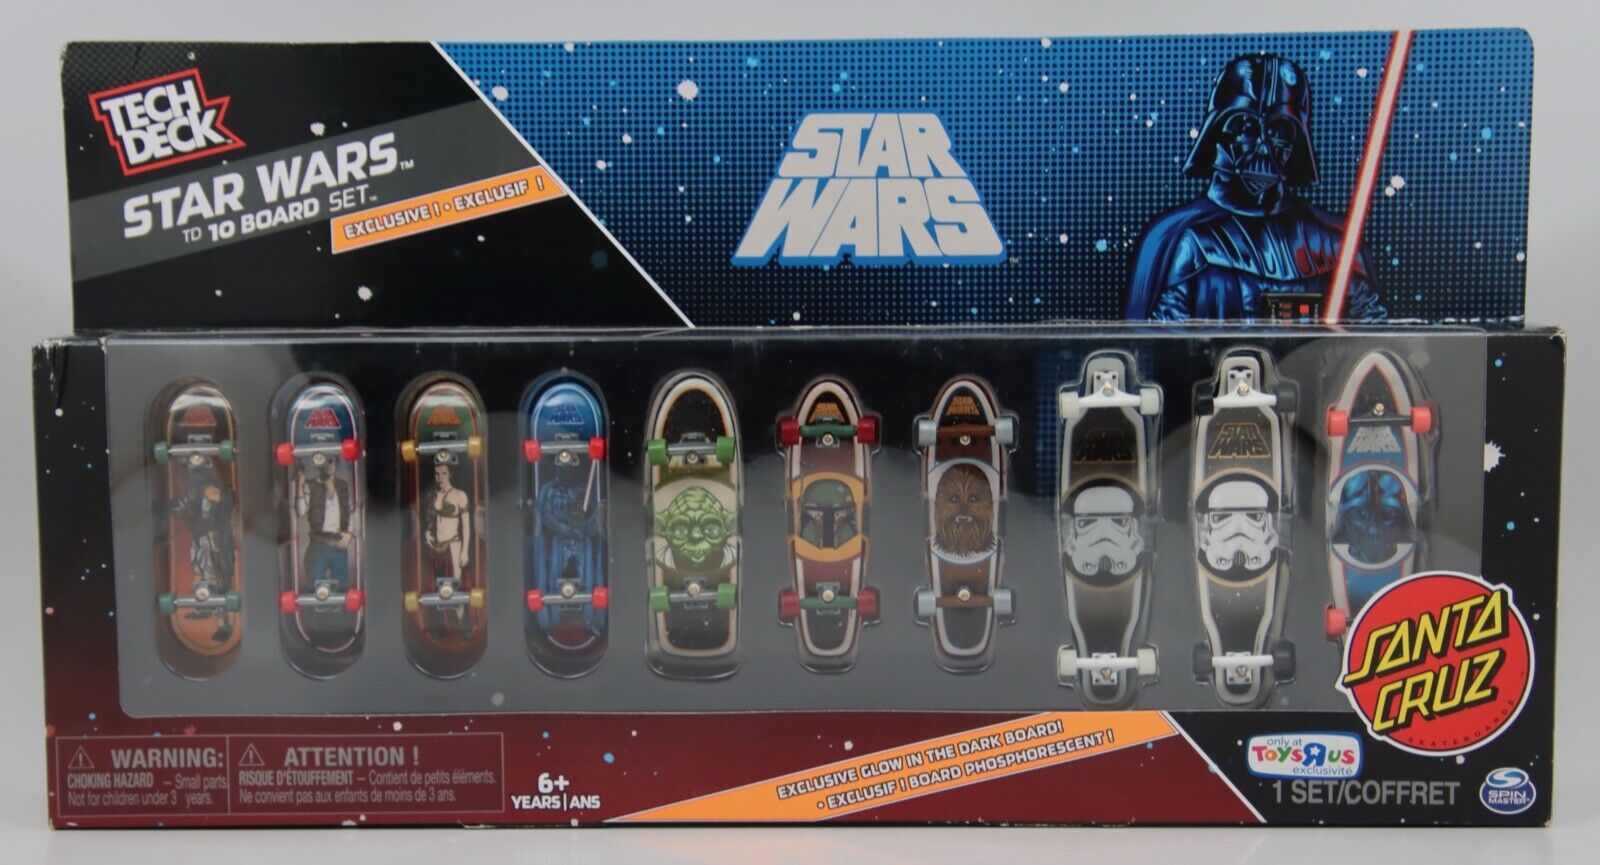 Tech Deck Star Wars TD 10 Board Set Santa Cruz Exclusive Toys R Us - NOS